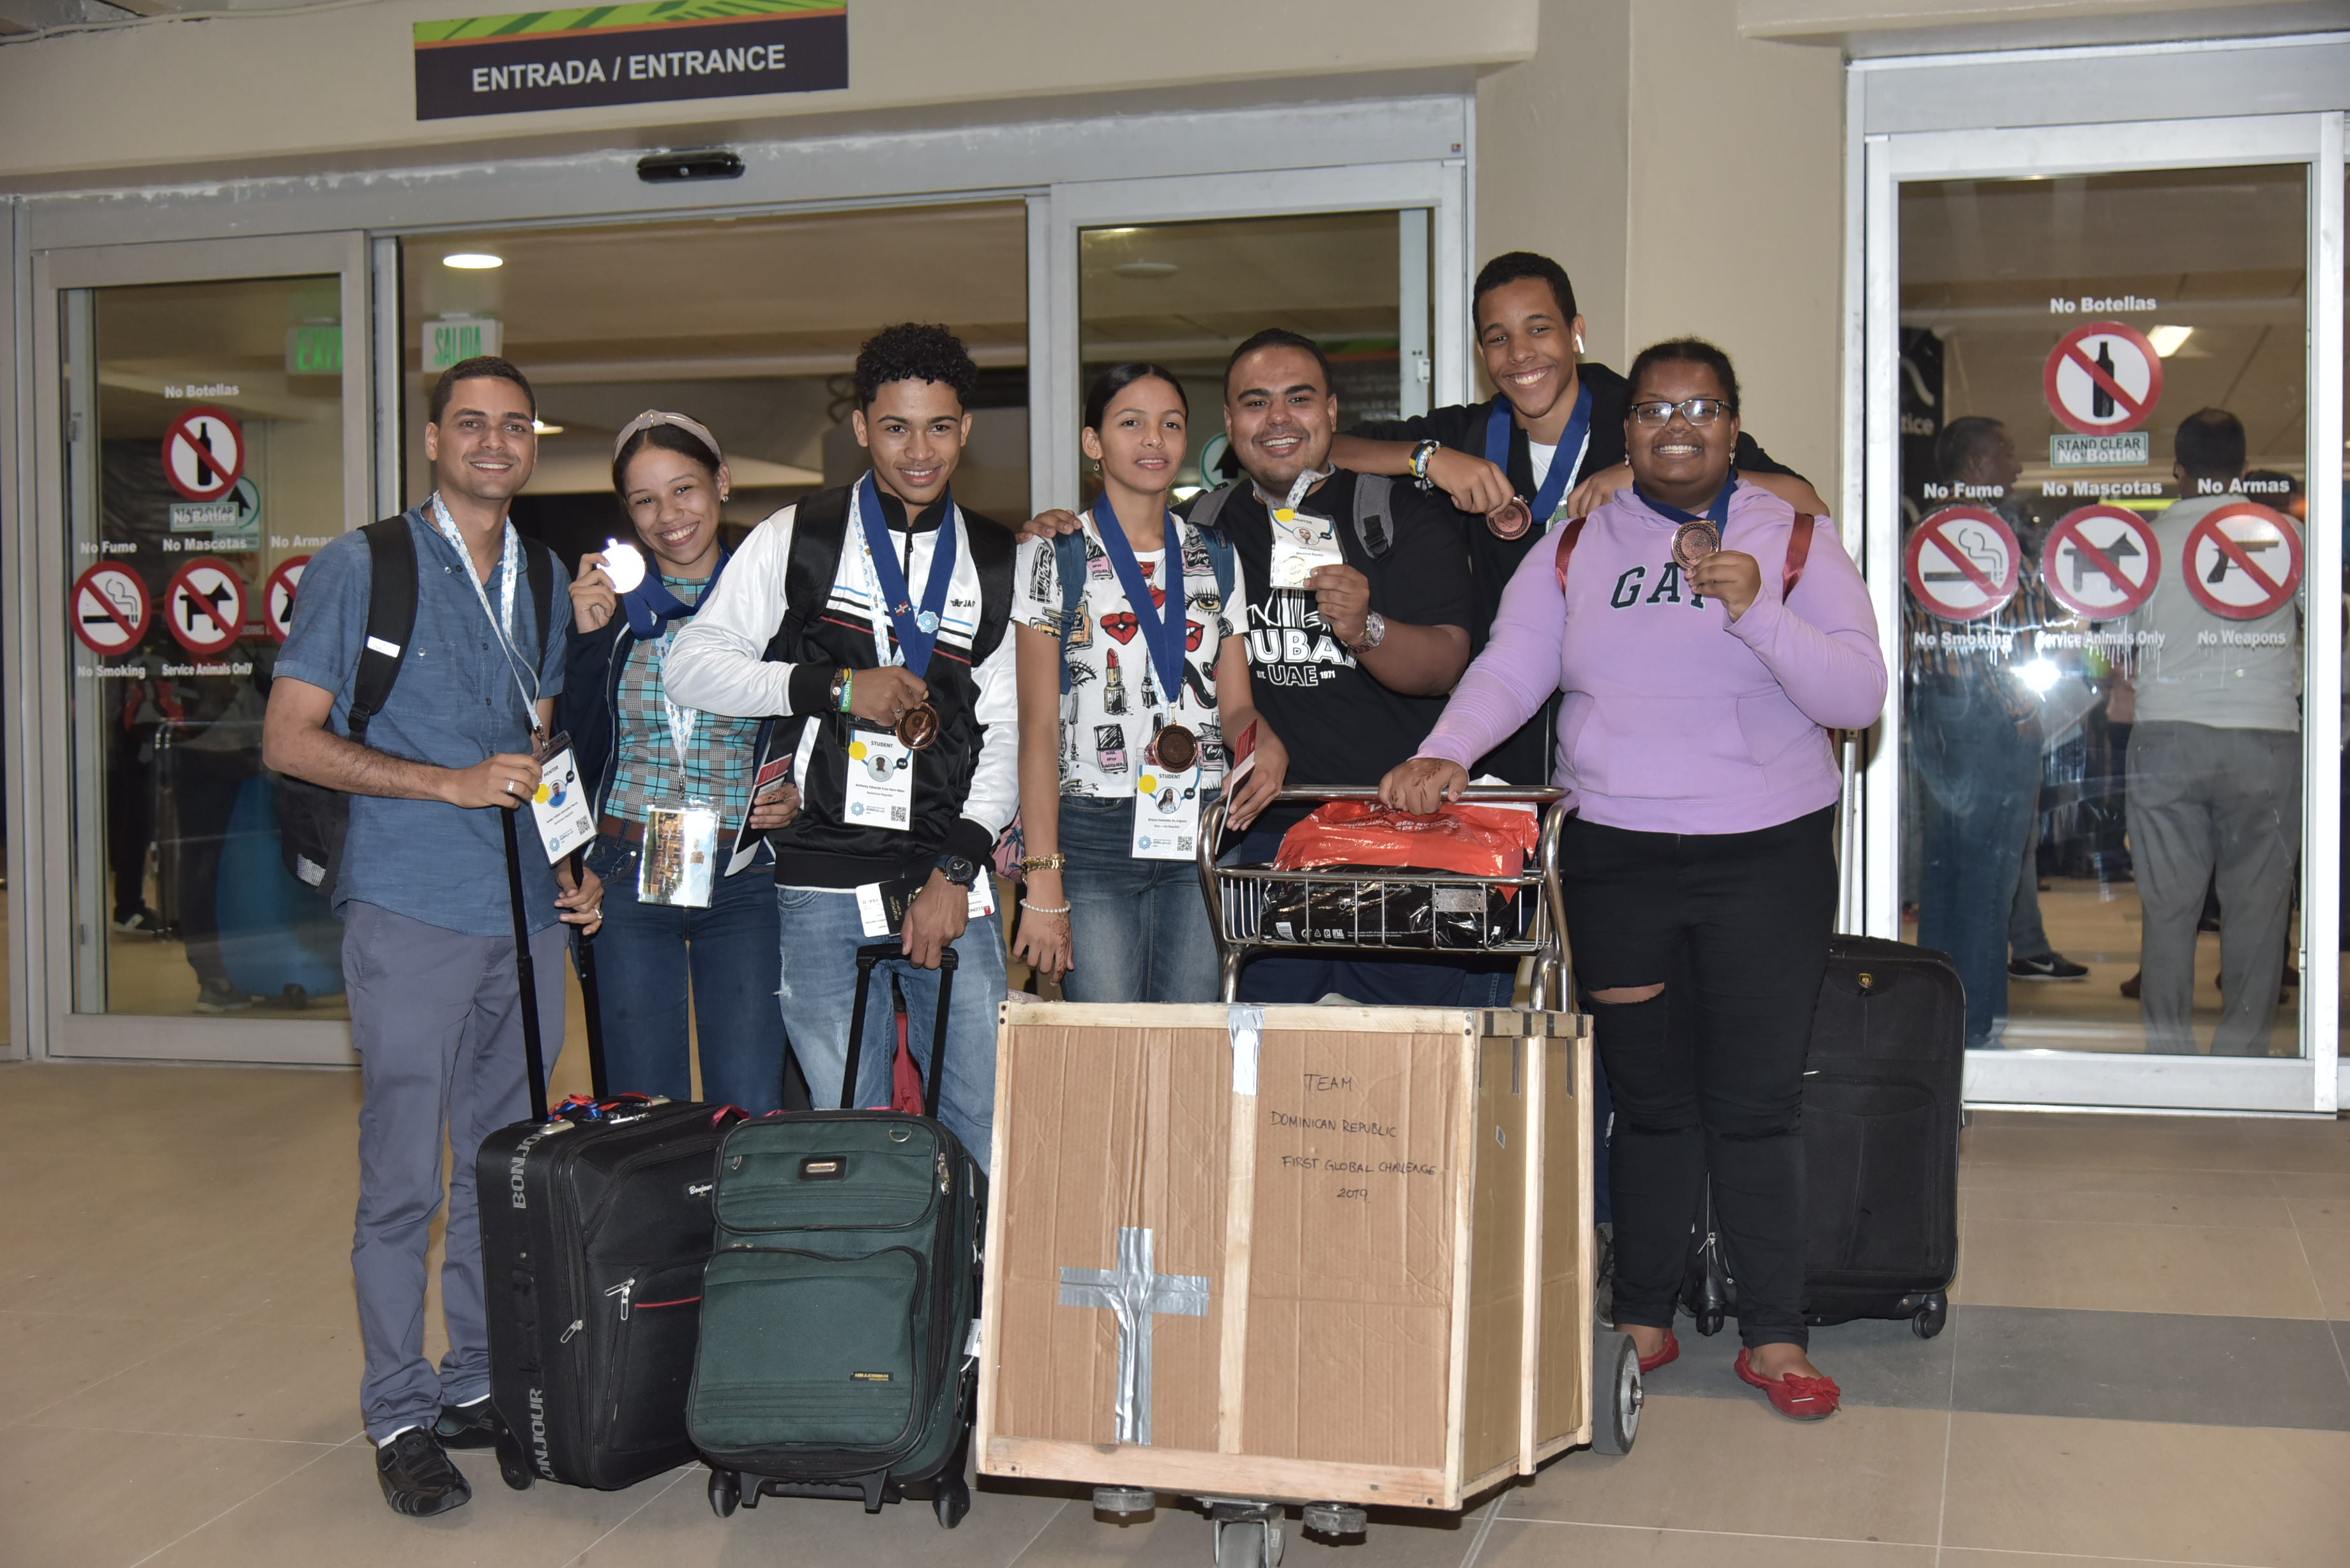 Estudiantes dominicanos ganan medalla de bronce en la Competencia Mundial de Robótica 2019 celebrada en Dubái